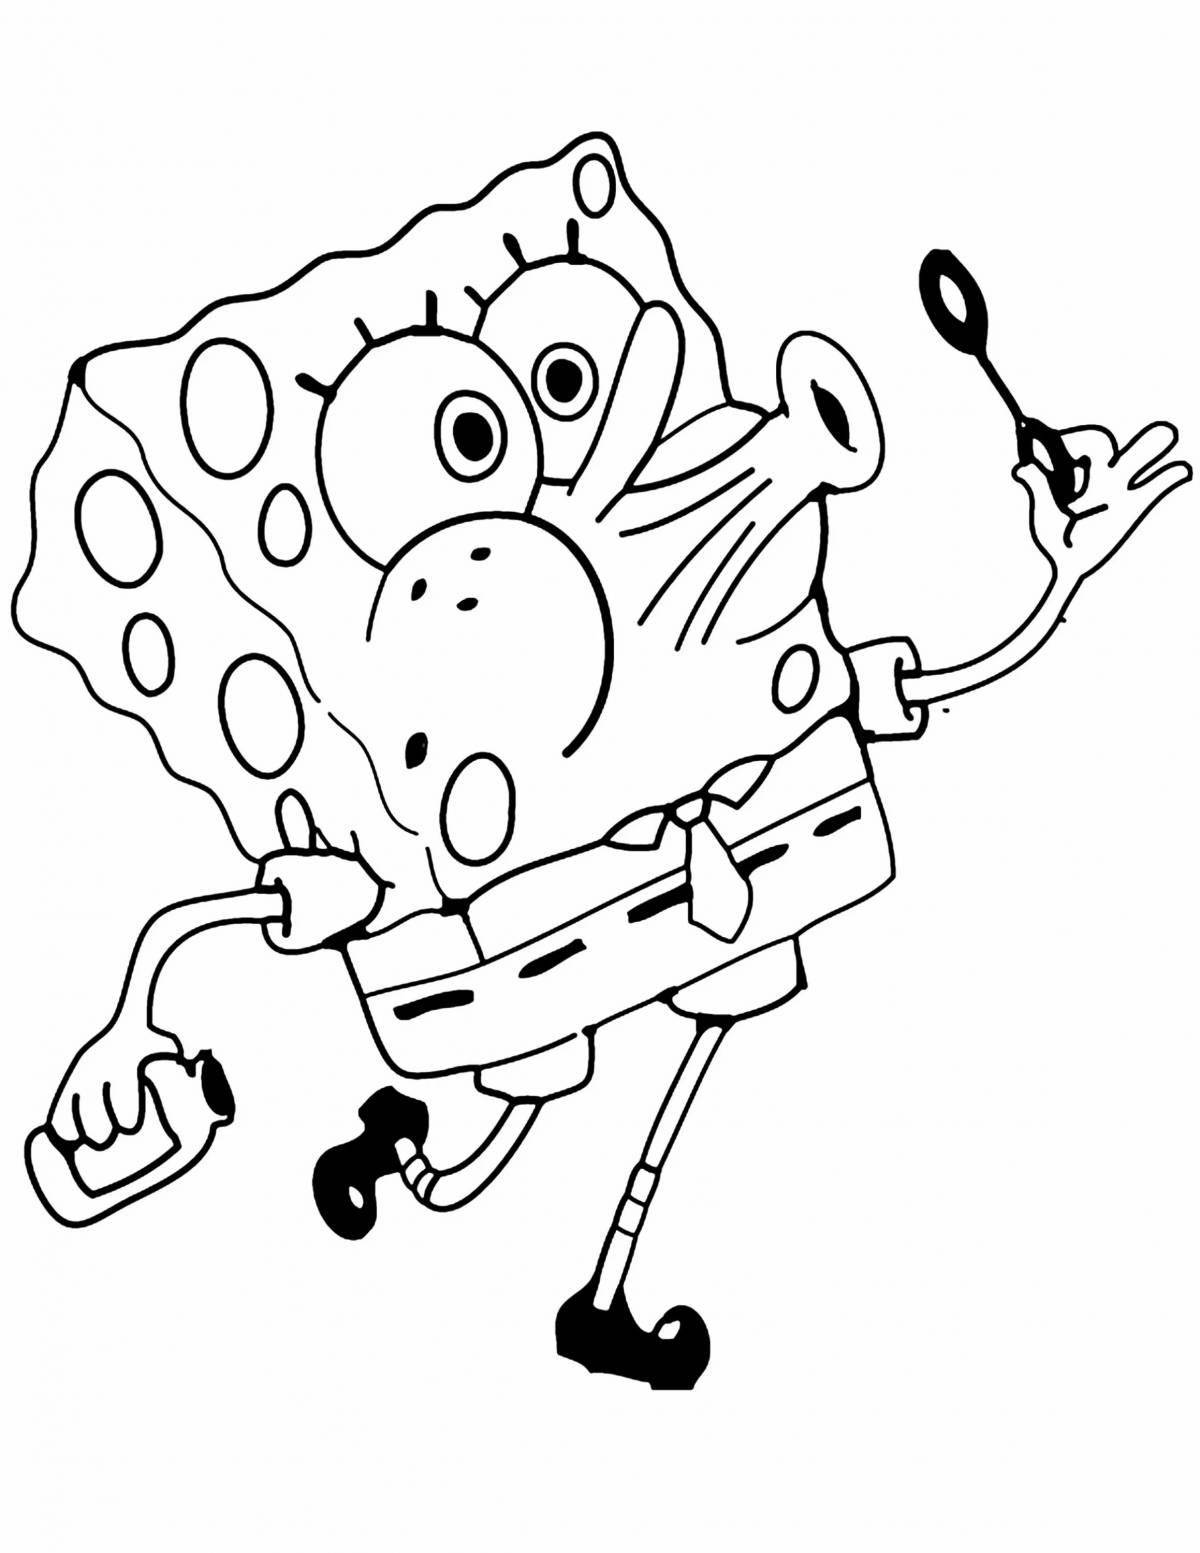 Spongebob fun coloring for kids